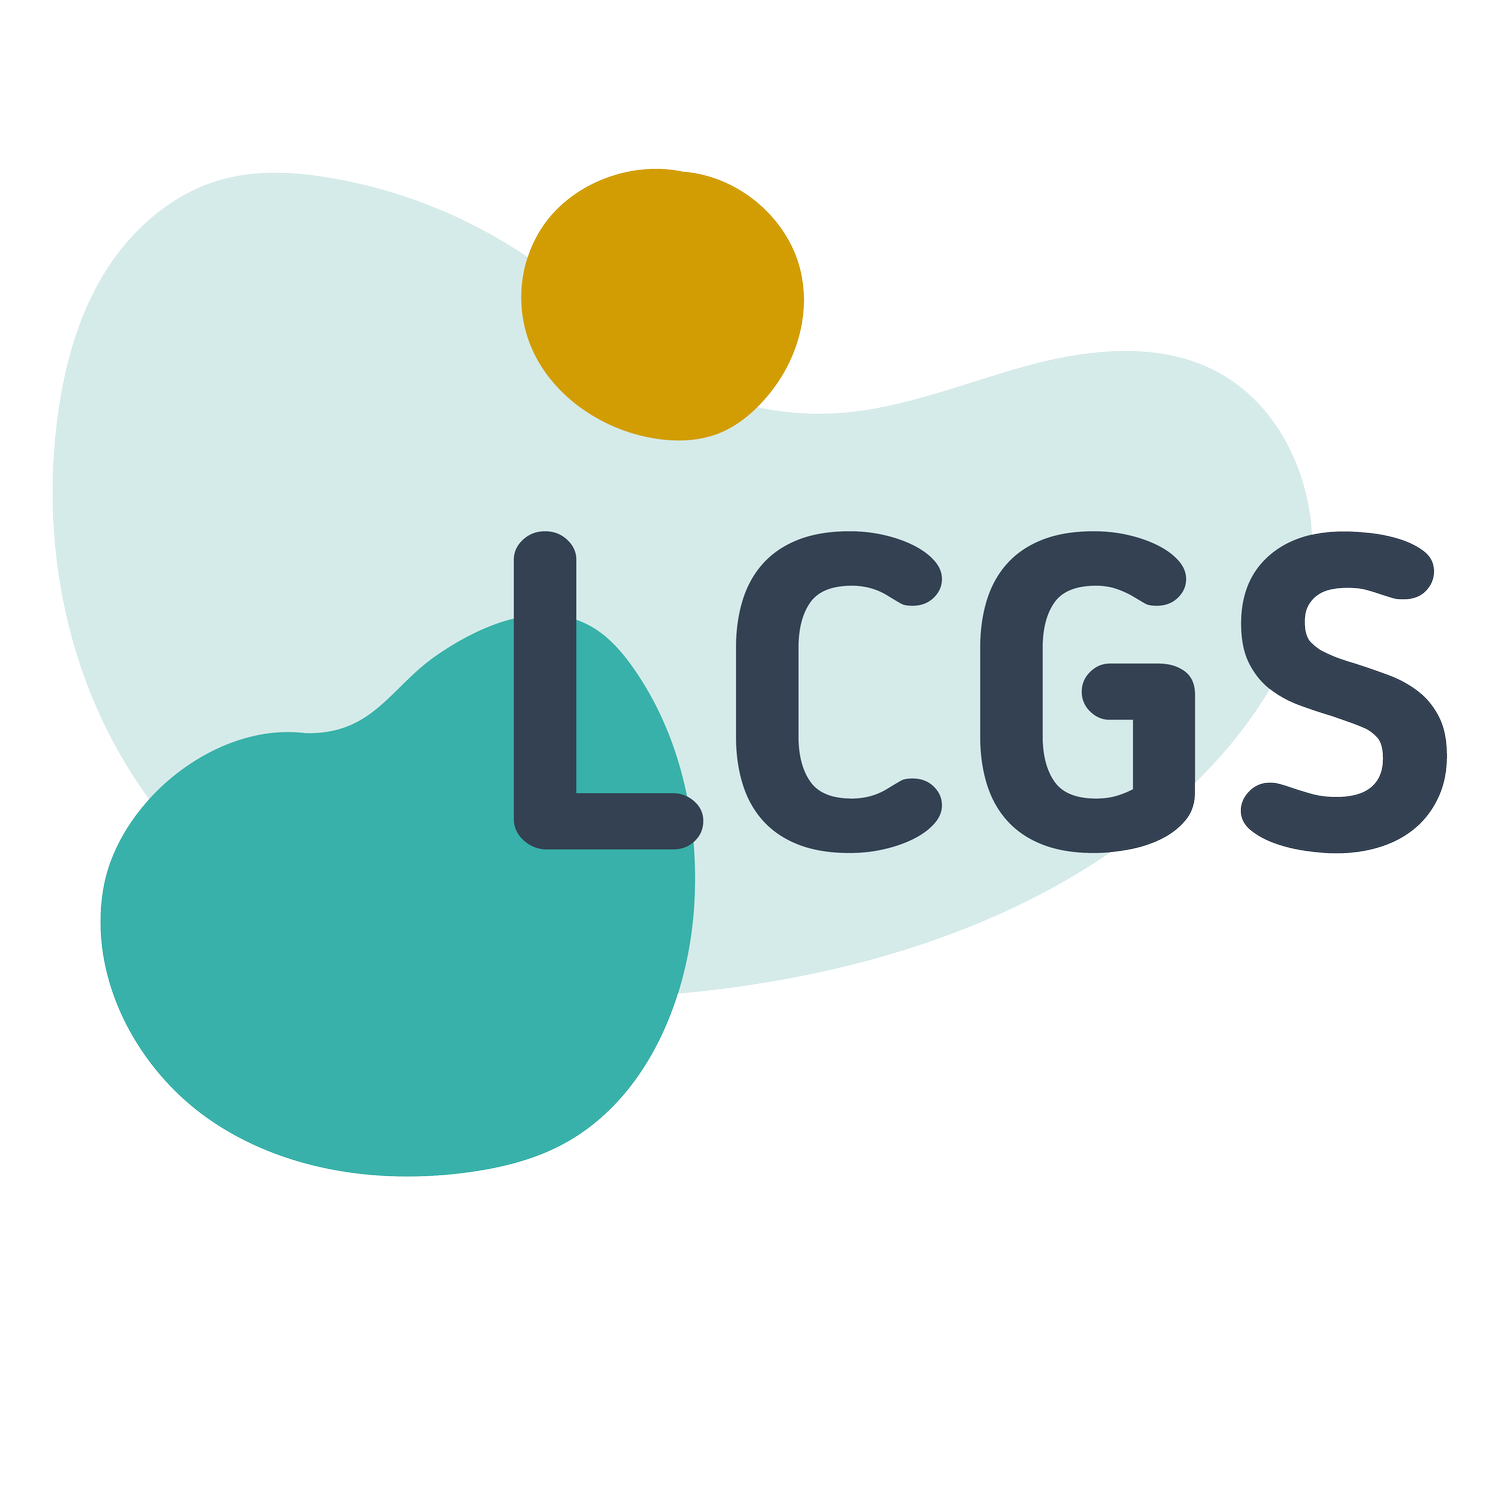 Lake Constance Graduate School gGmbH (LCGS)